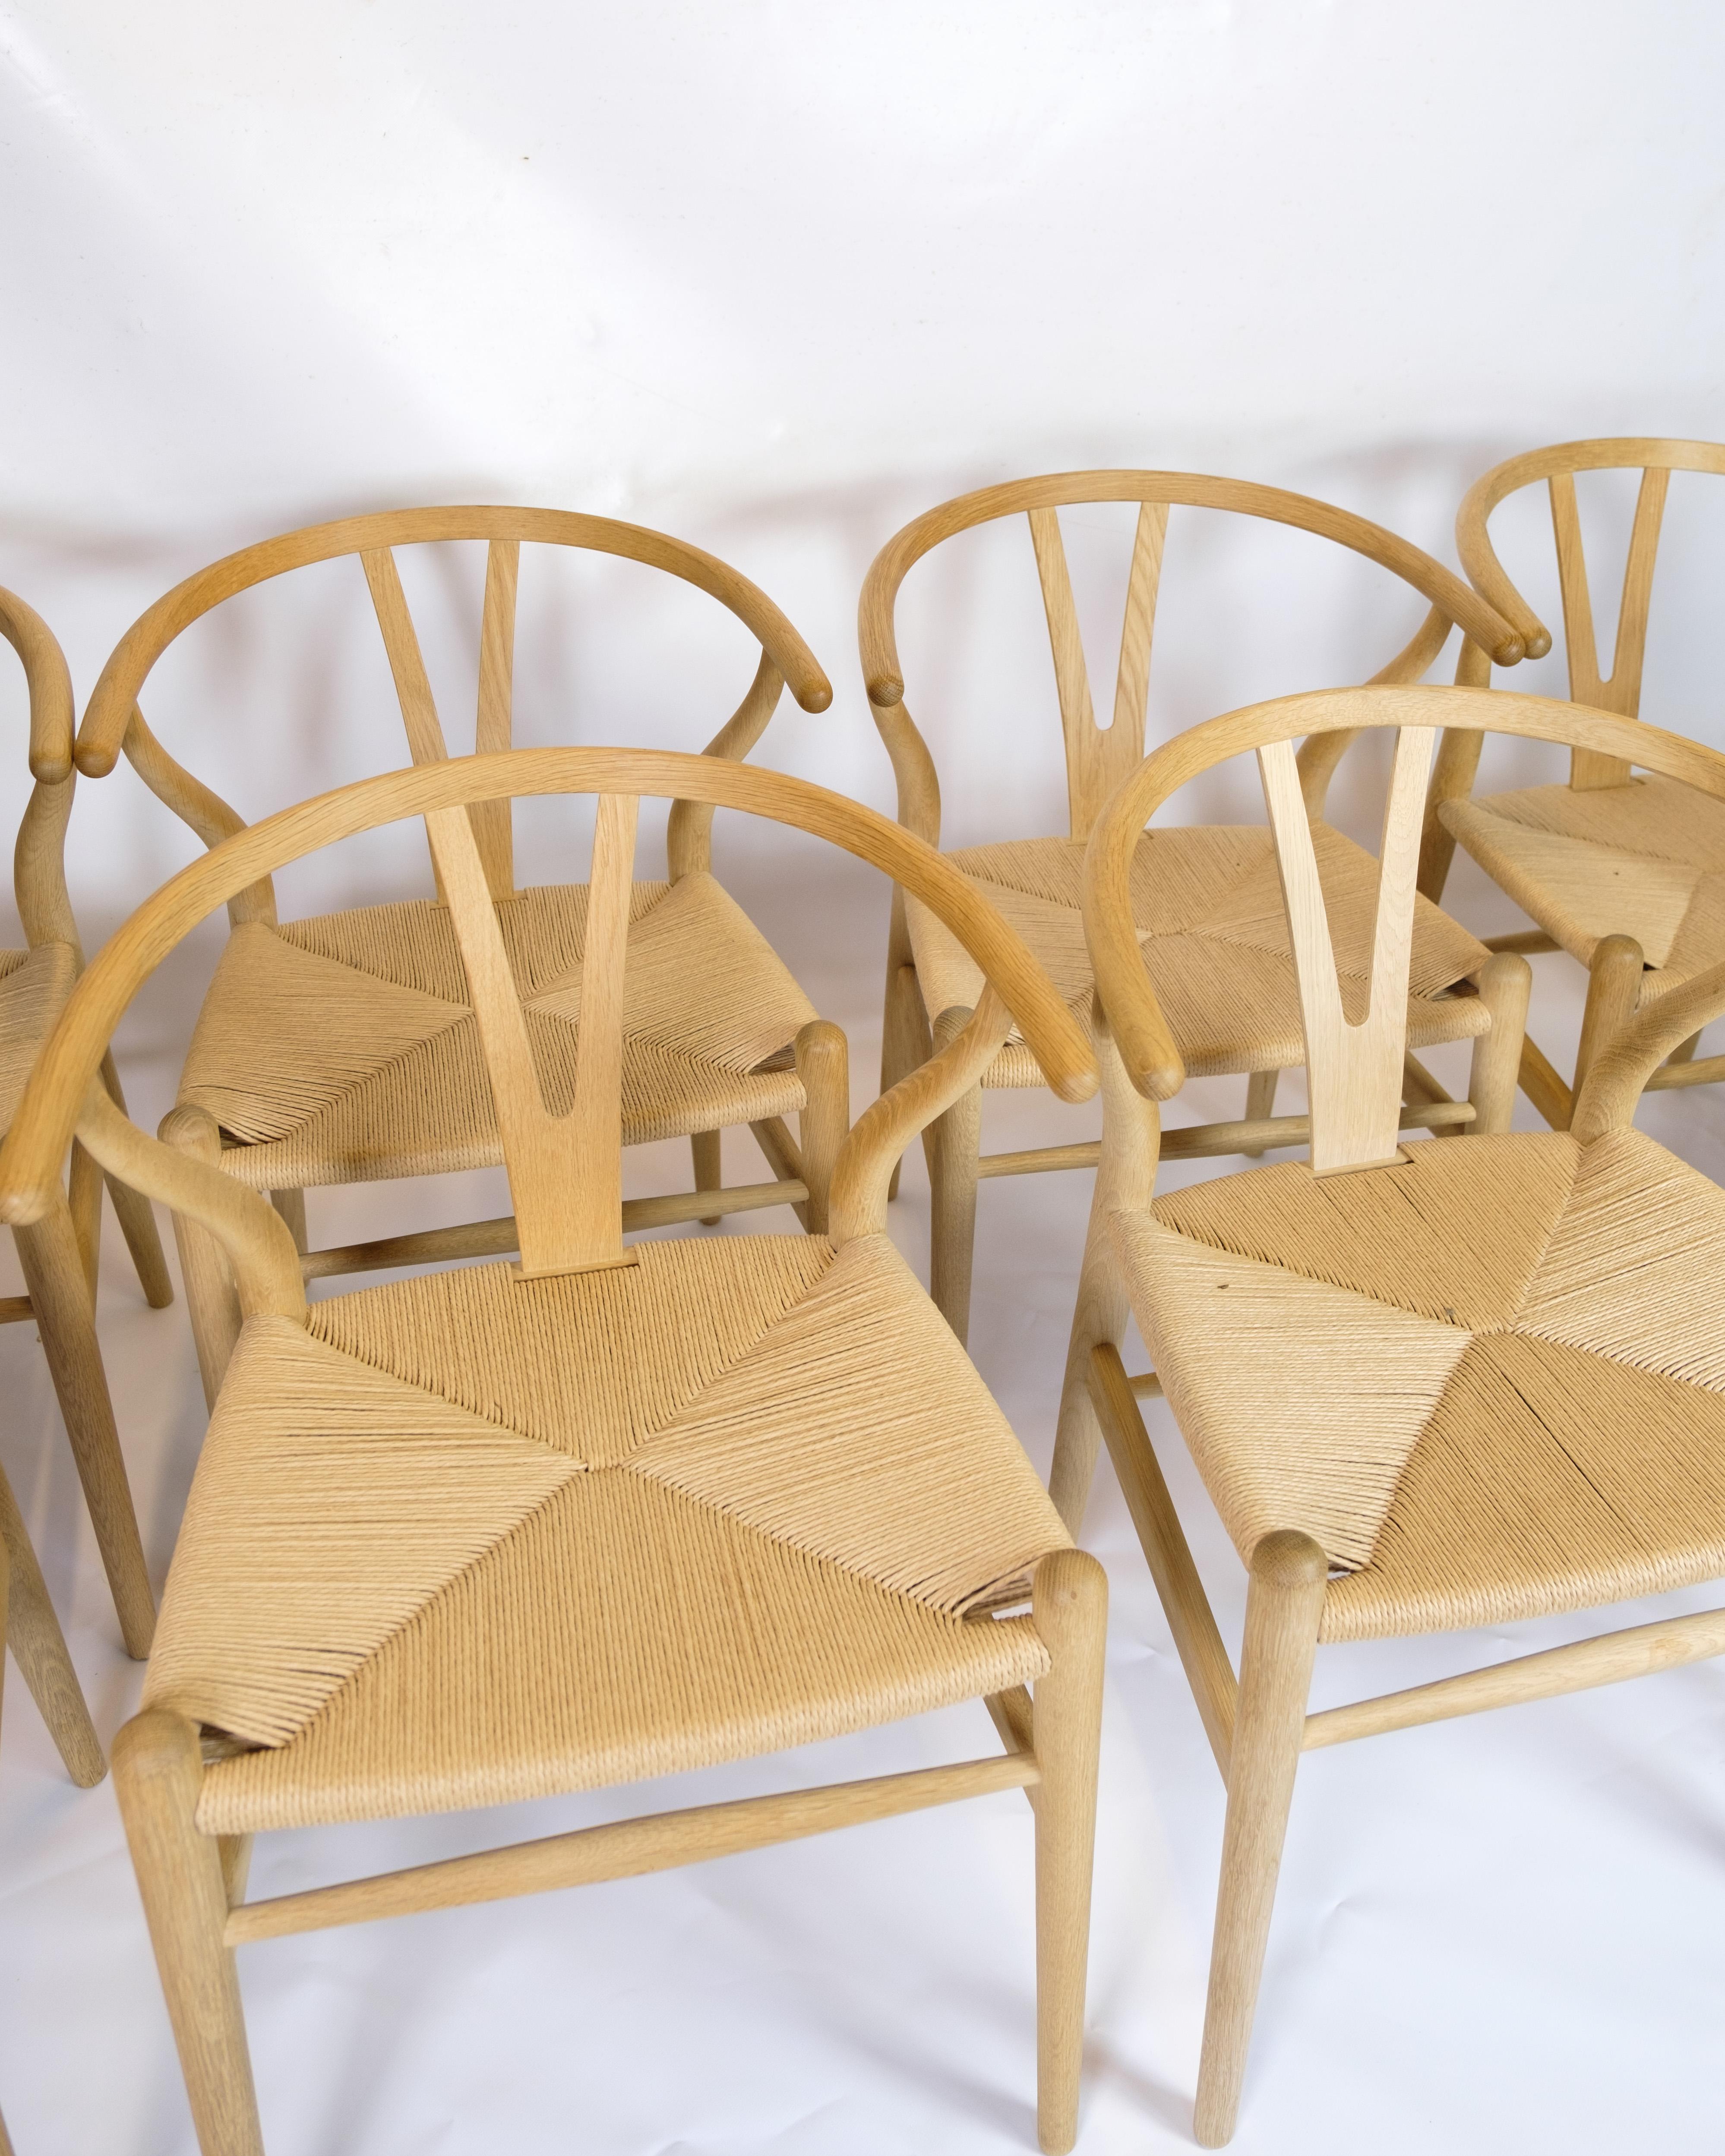 L'ensemble de quatre chaises en Y, modèle CH24, est un modèle emblématique créé par le célèbre architecte et designer de meubles danois Hans J. Wegner en 1950. Les chaises sont fabriquées en chêne, ce qui leur confère une chaleur et une élégance